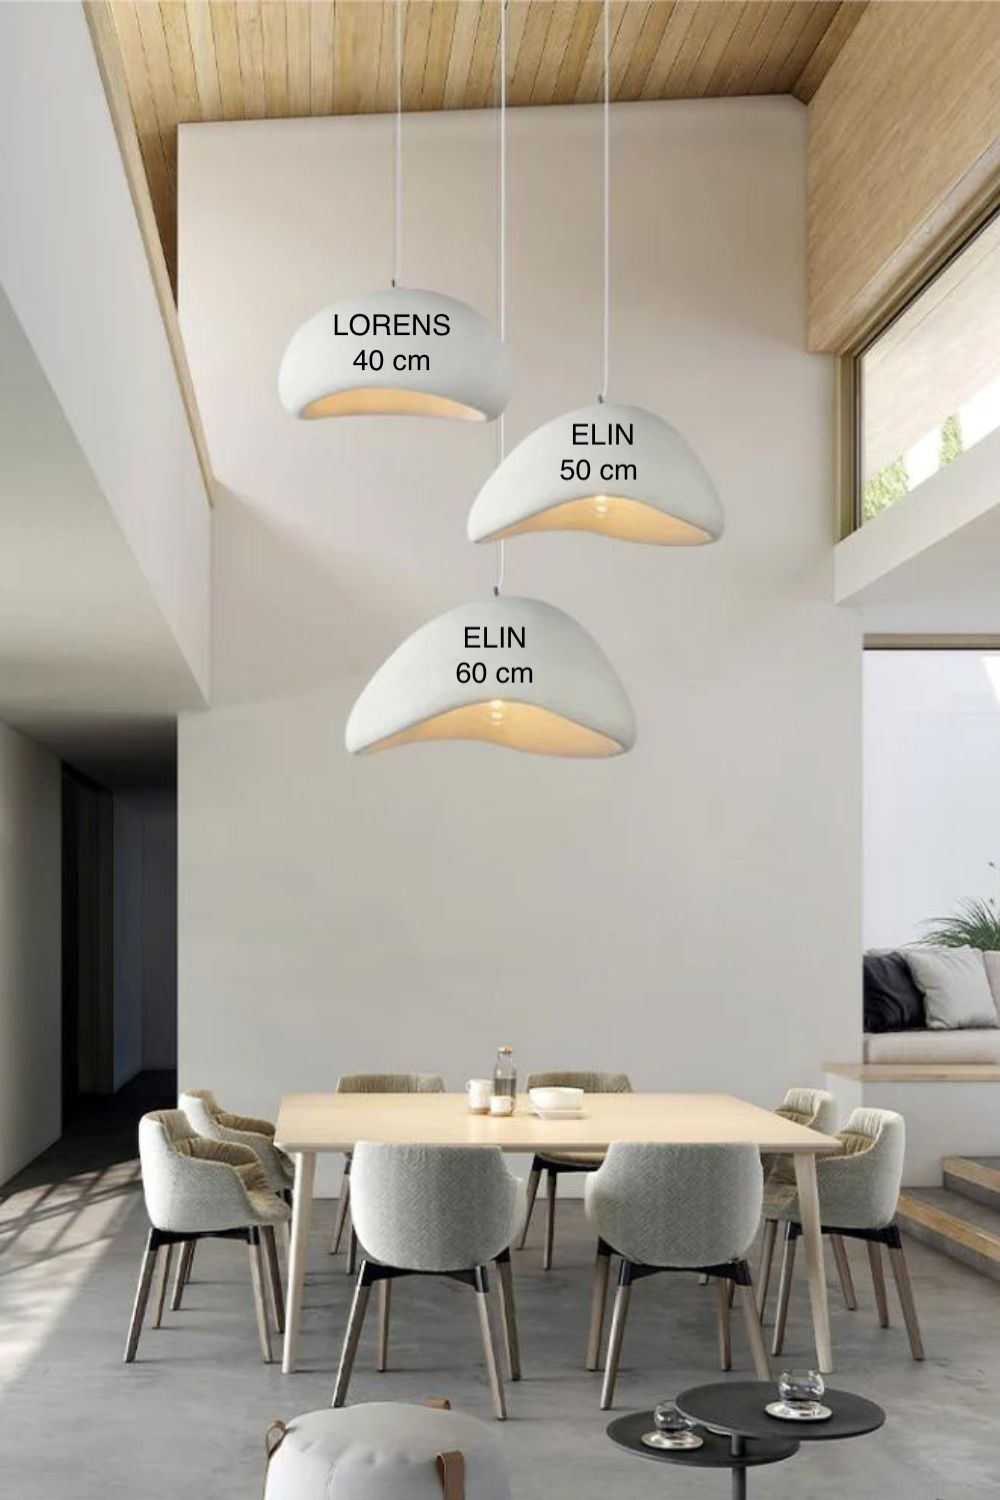 salle à manger contemporaine et lumineuse avec haut plafond sur lequel sont accrochés trois grosses suspensions luminaires design indiquant les dimensions